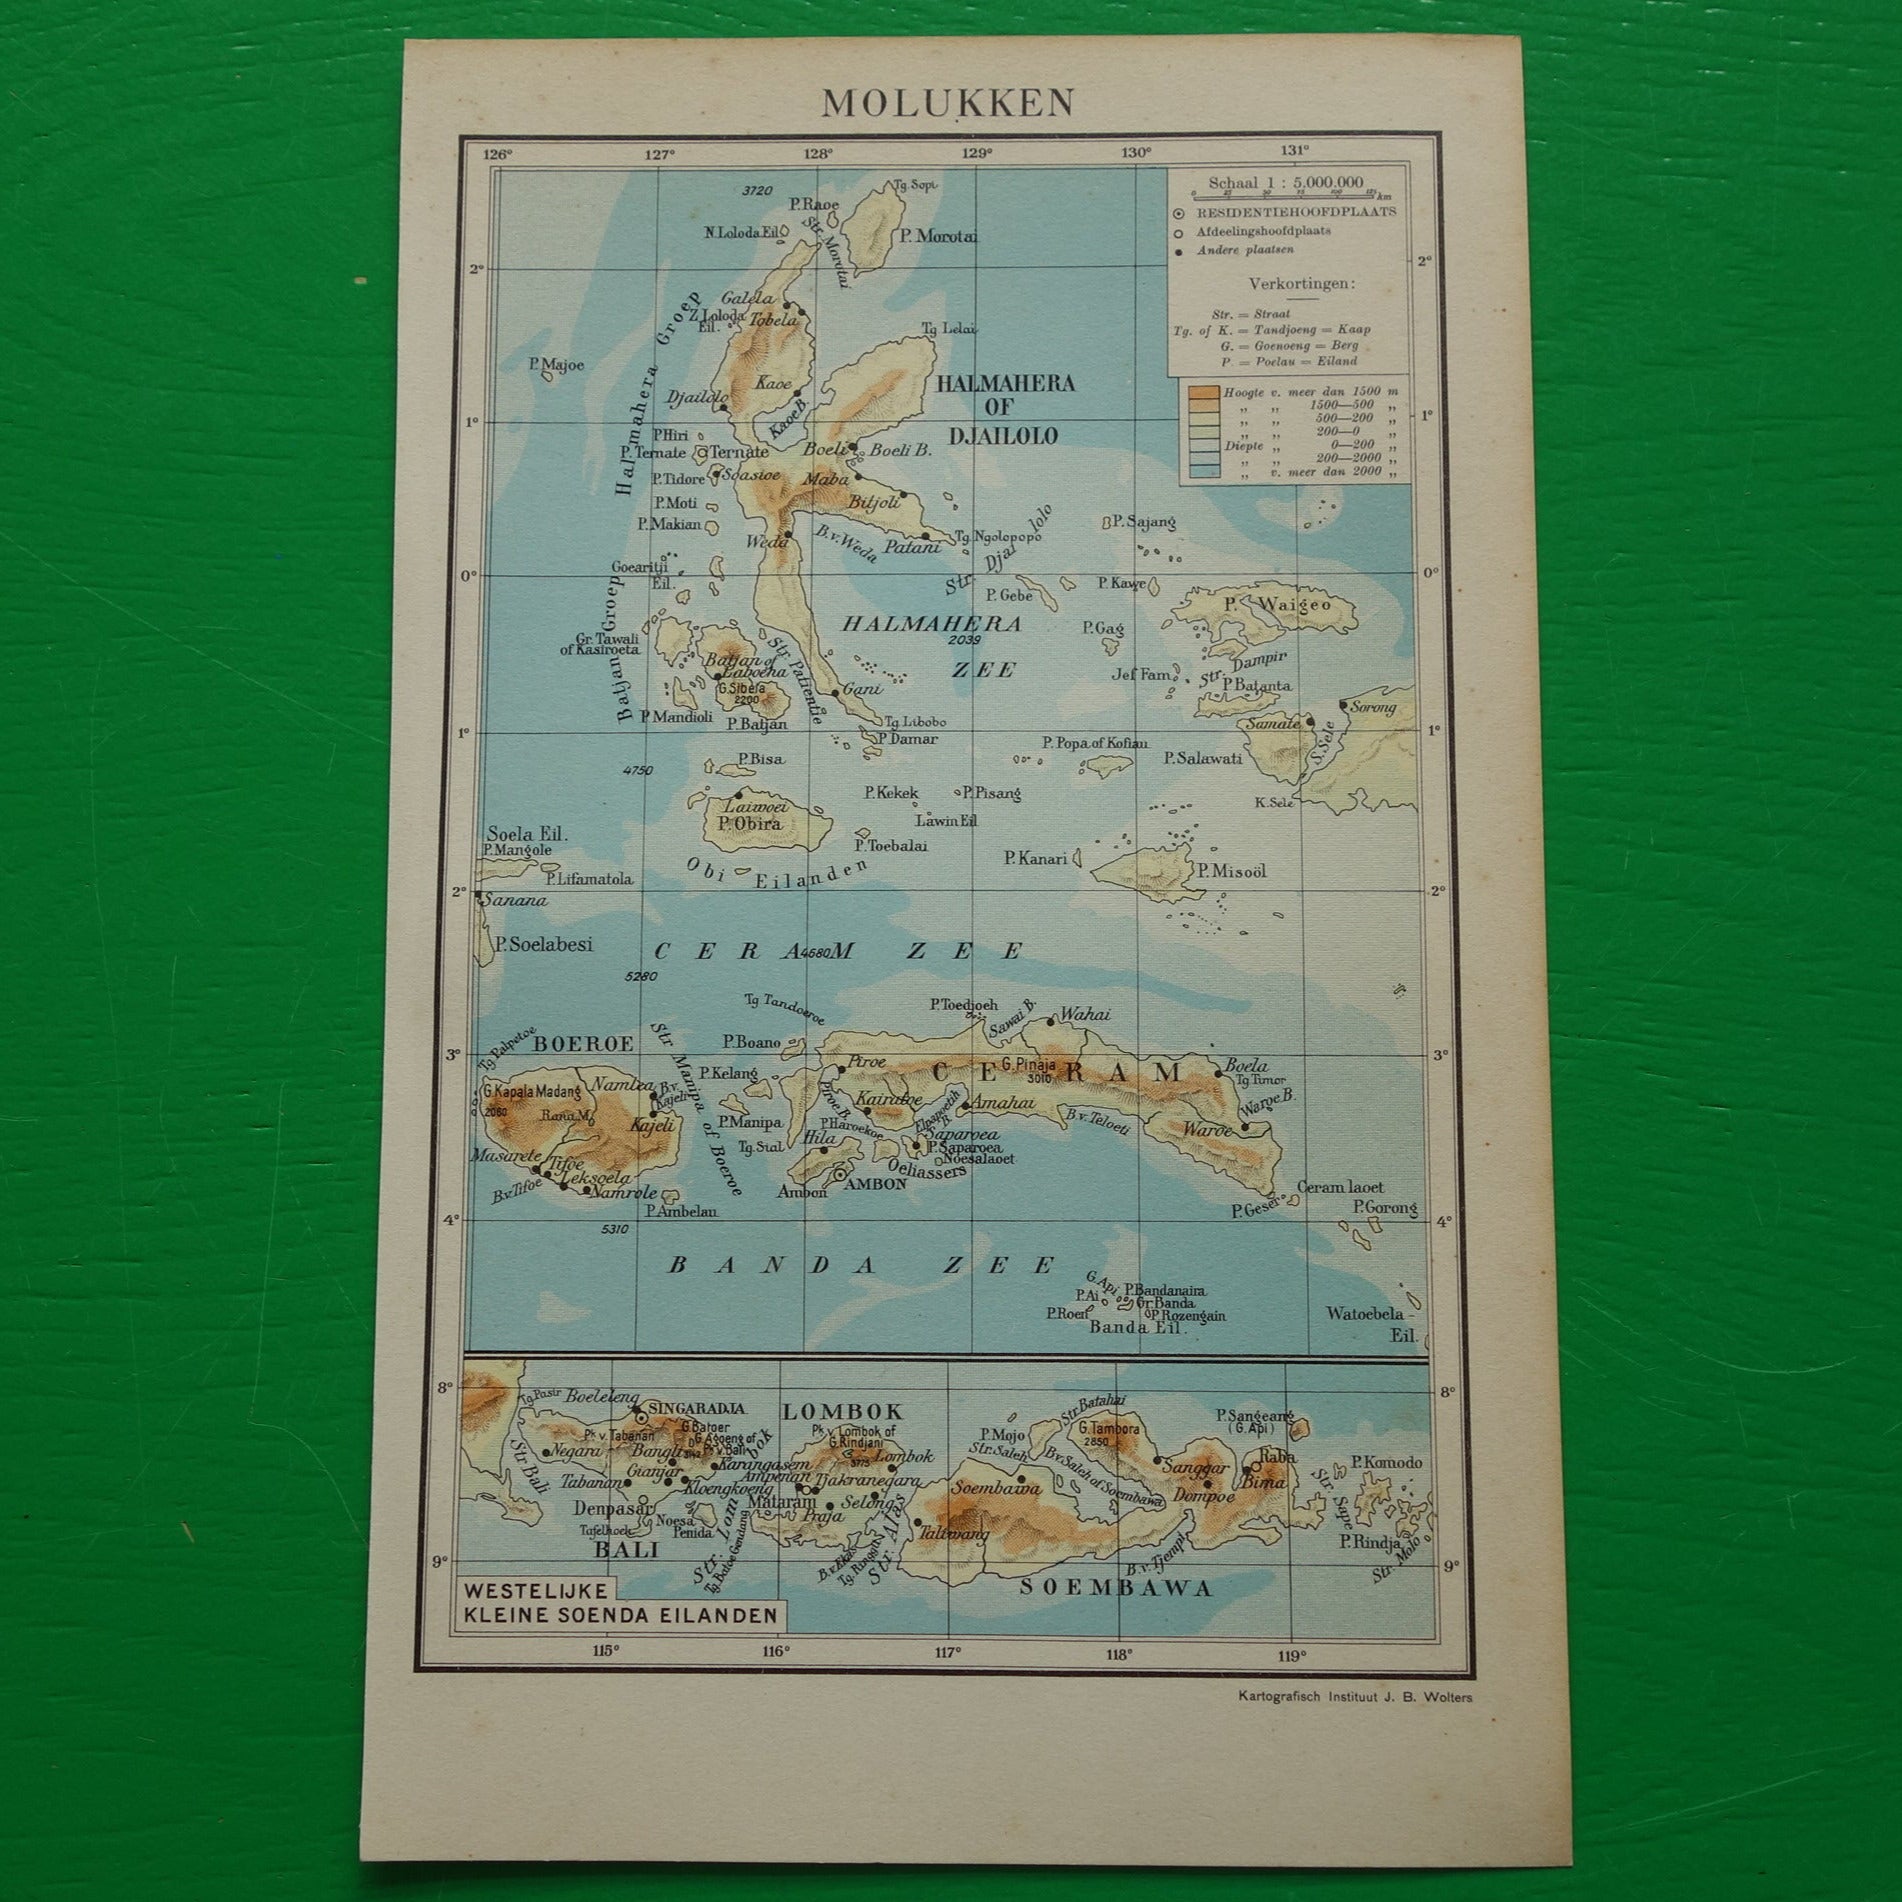 MOLUKKEN Oude kleine landkaart van de Molukken uit 1937 originele vintage kaart Indonesië